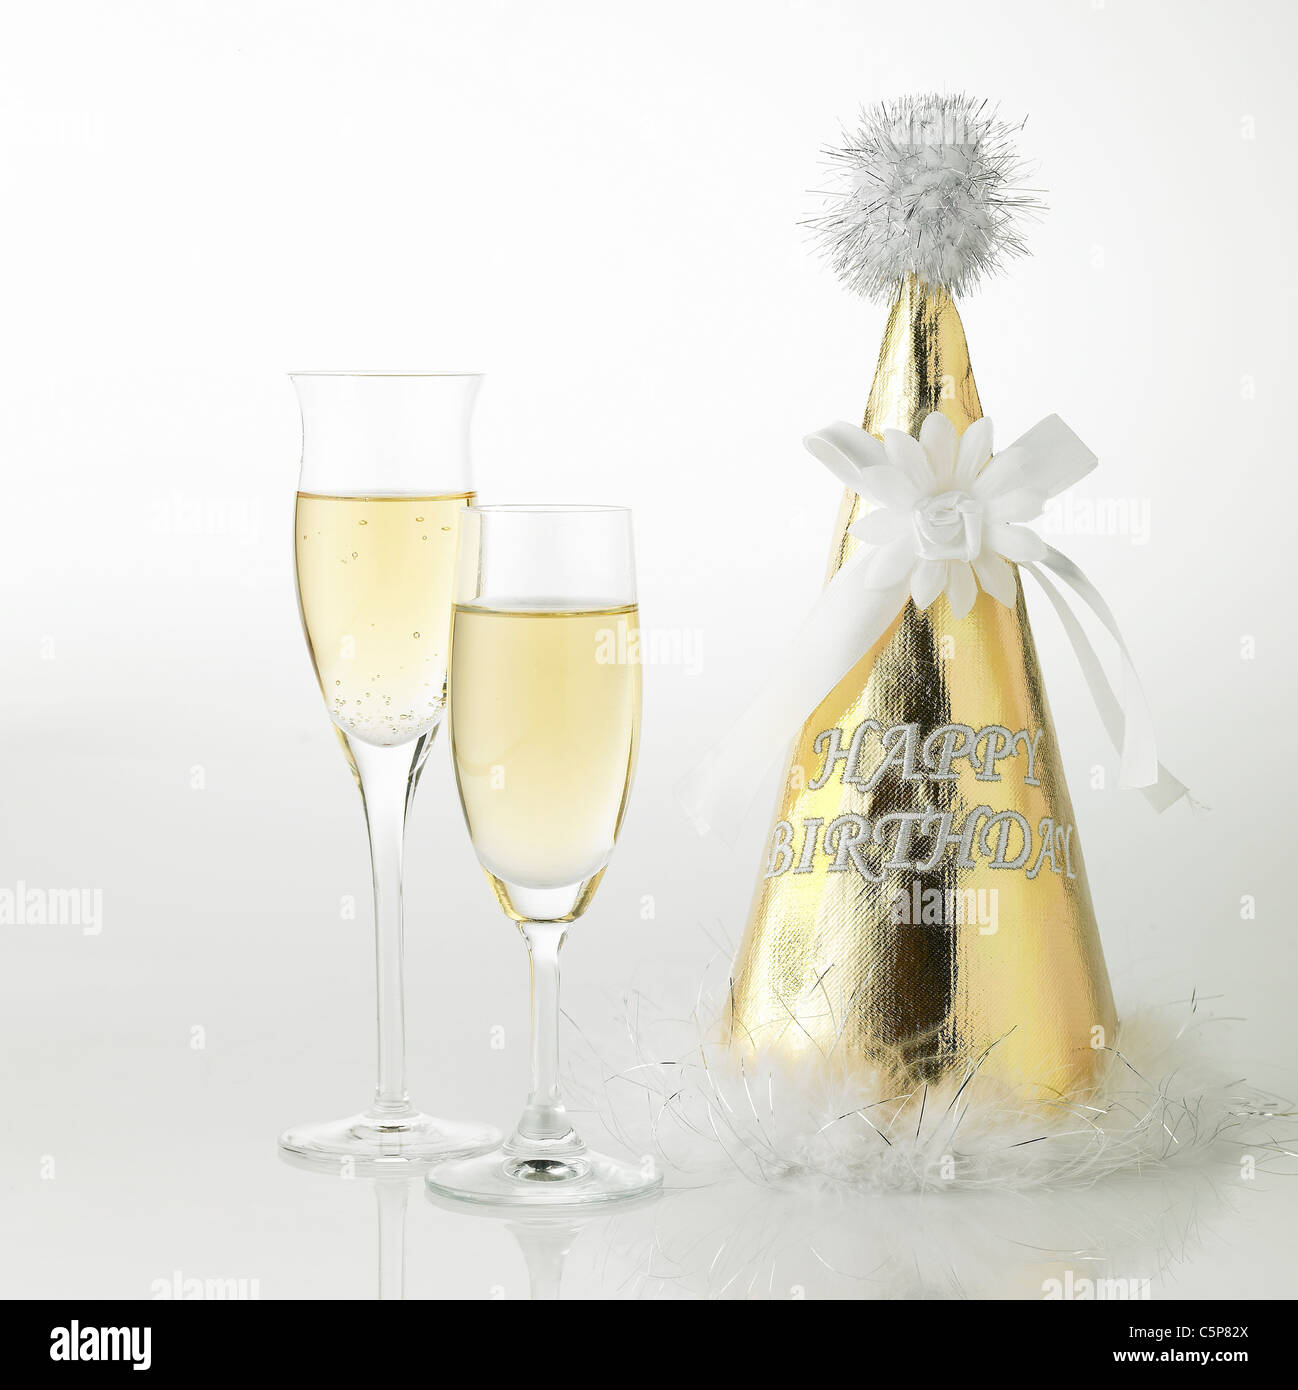 Le verre à champagne et party hat Banque D'Images